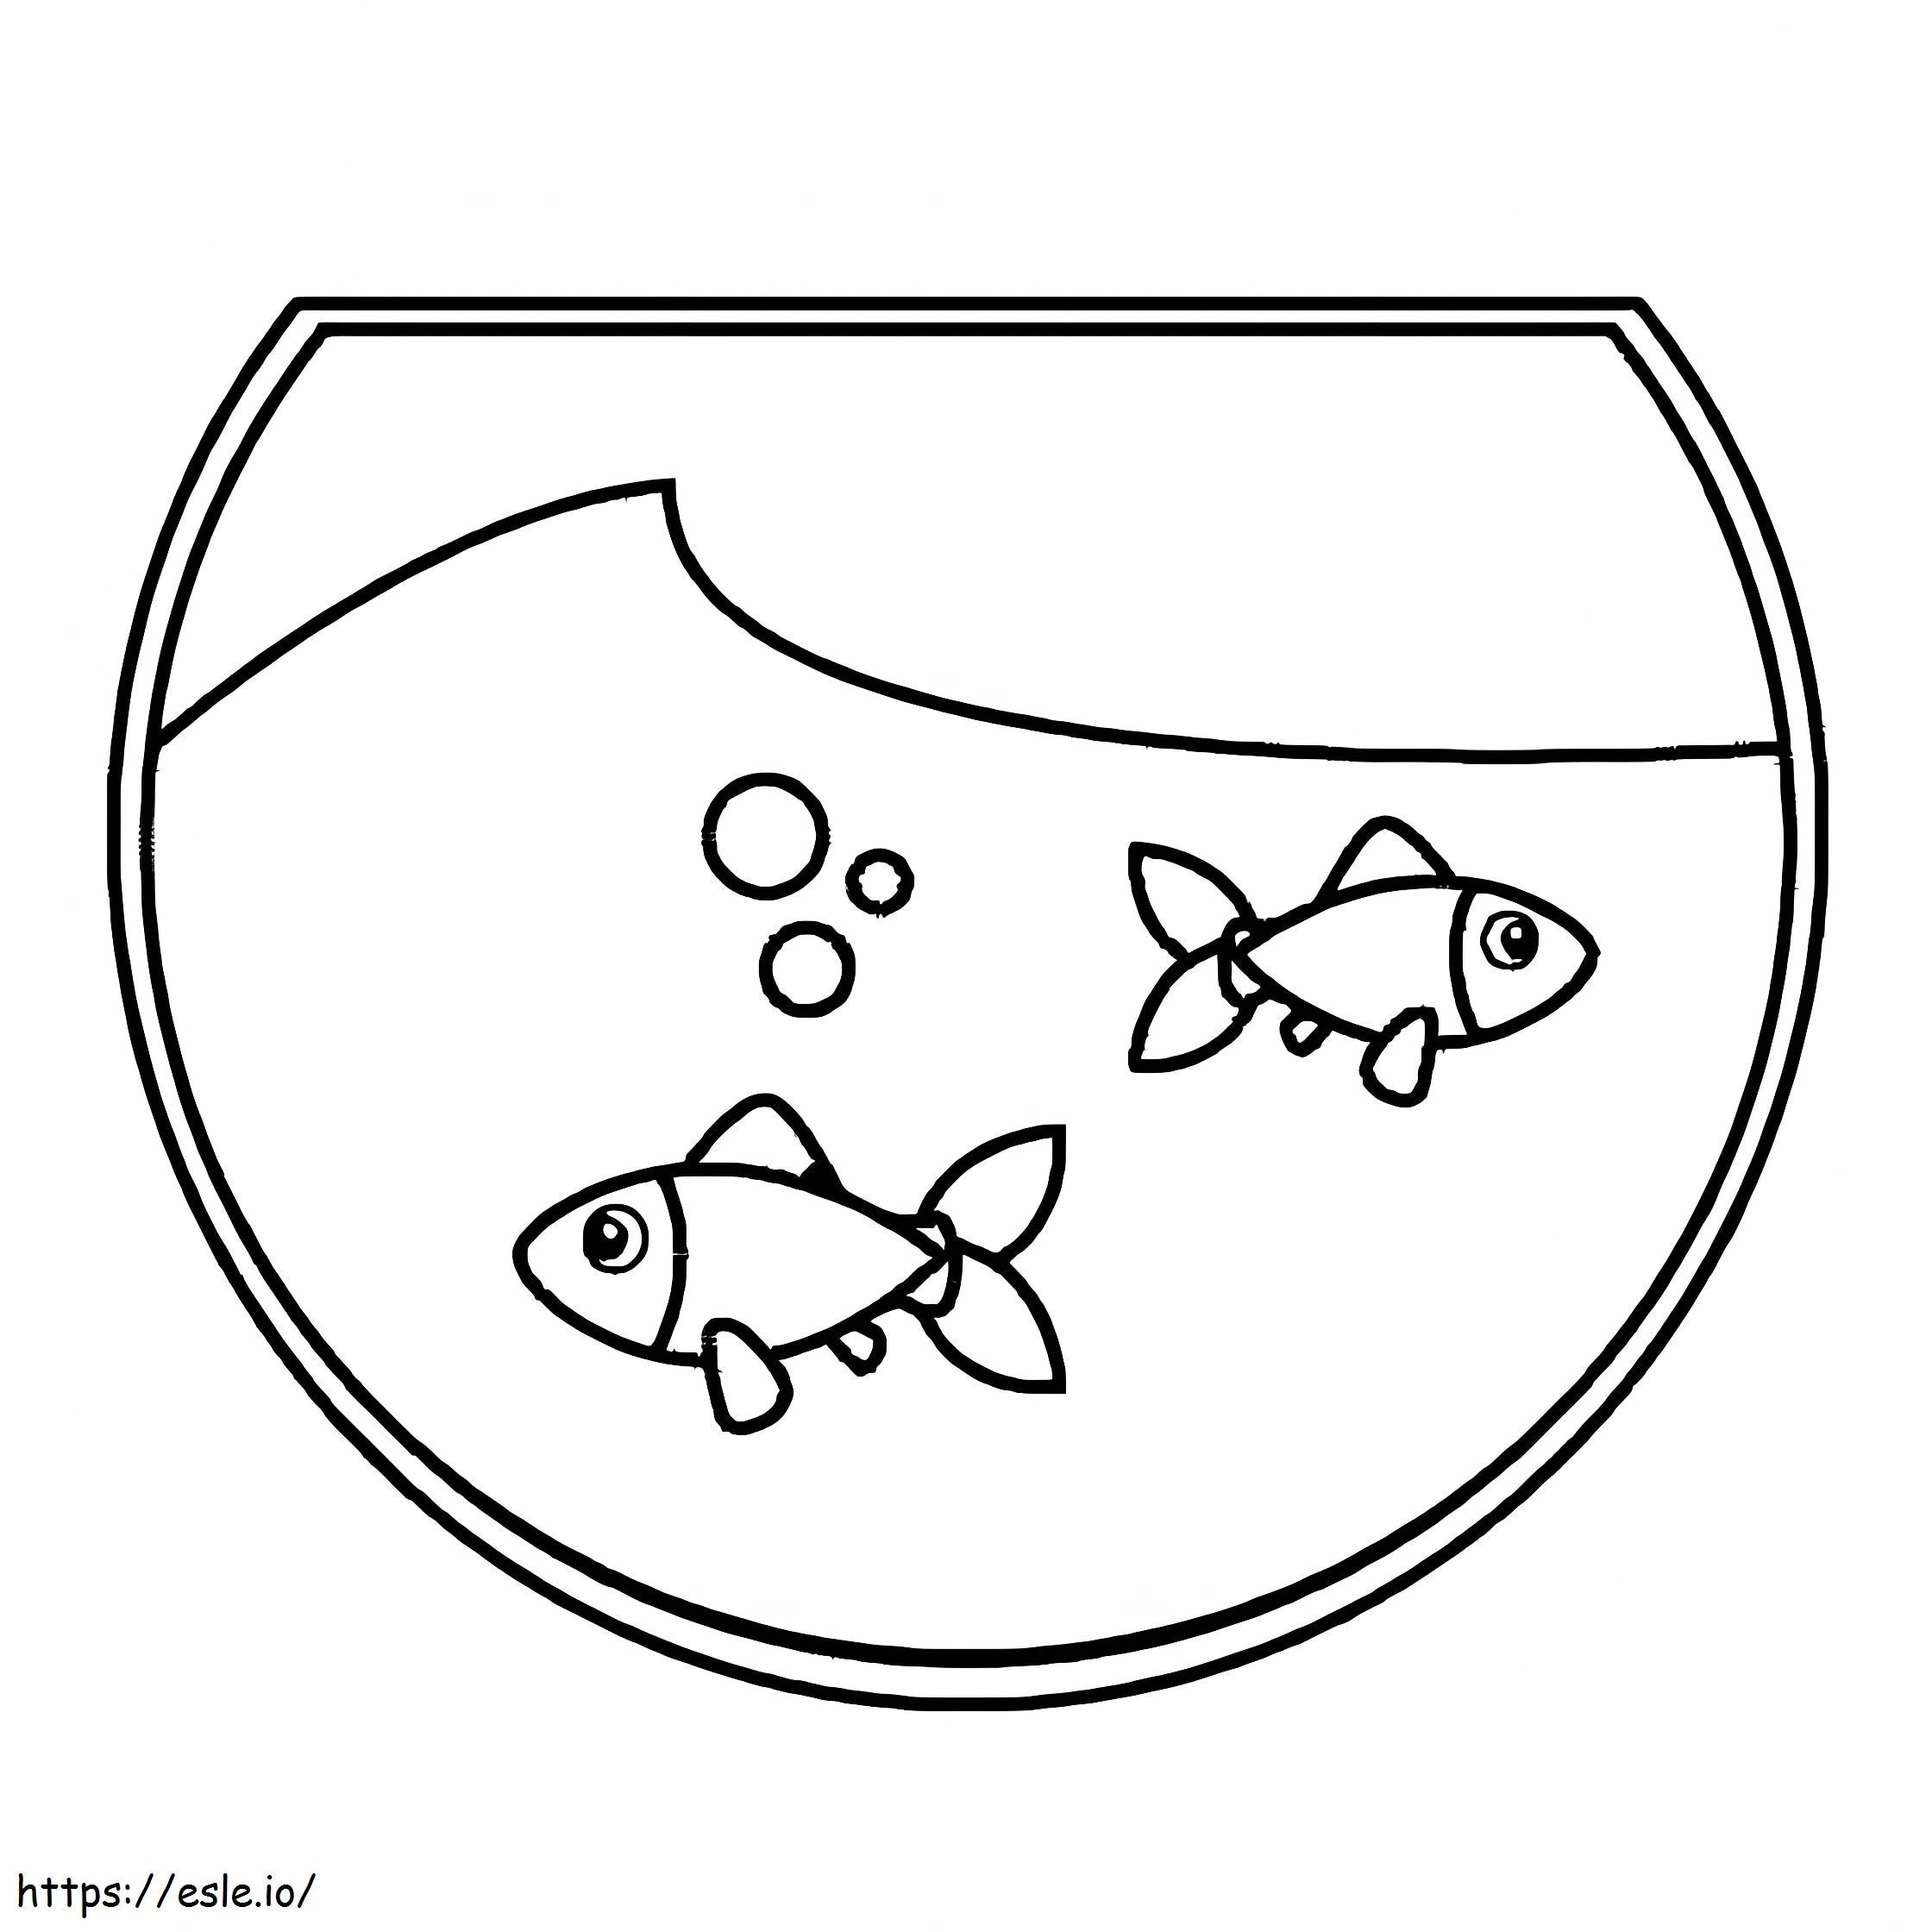 Ücretsiz Yazdırılabilir Balık Tankı boyama